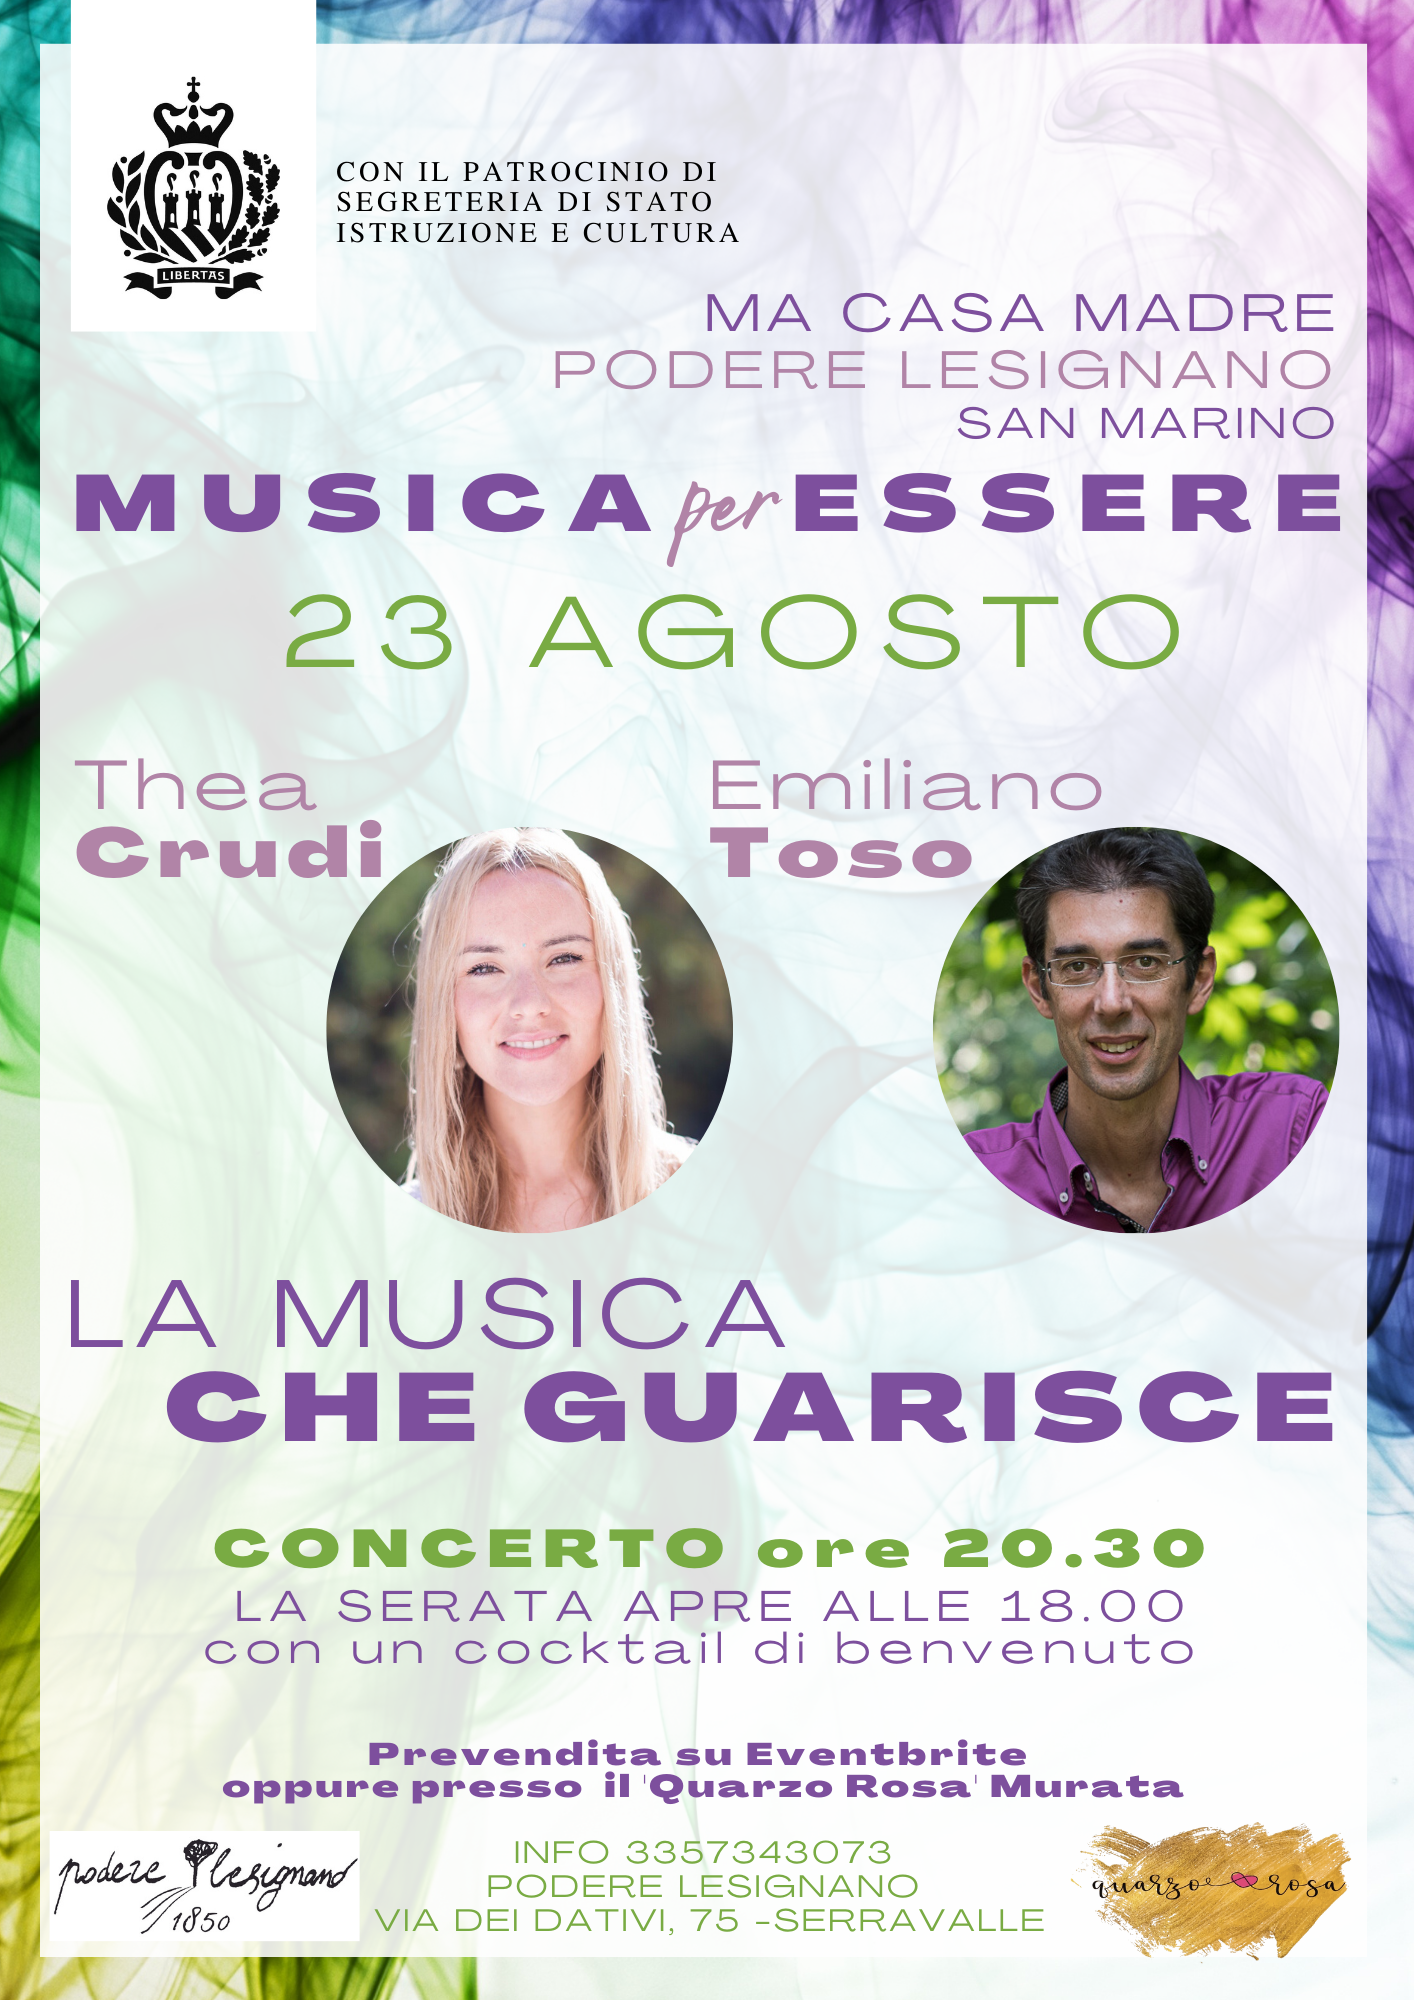 San Marino. “La Musica che guarisce”: Thea Crudi e Emiliano Toso in concerto il 23 agosto al Podere Lesignano